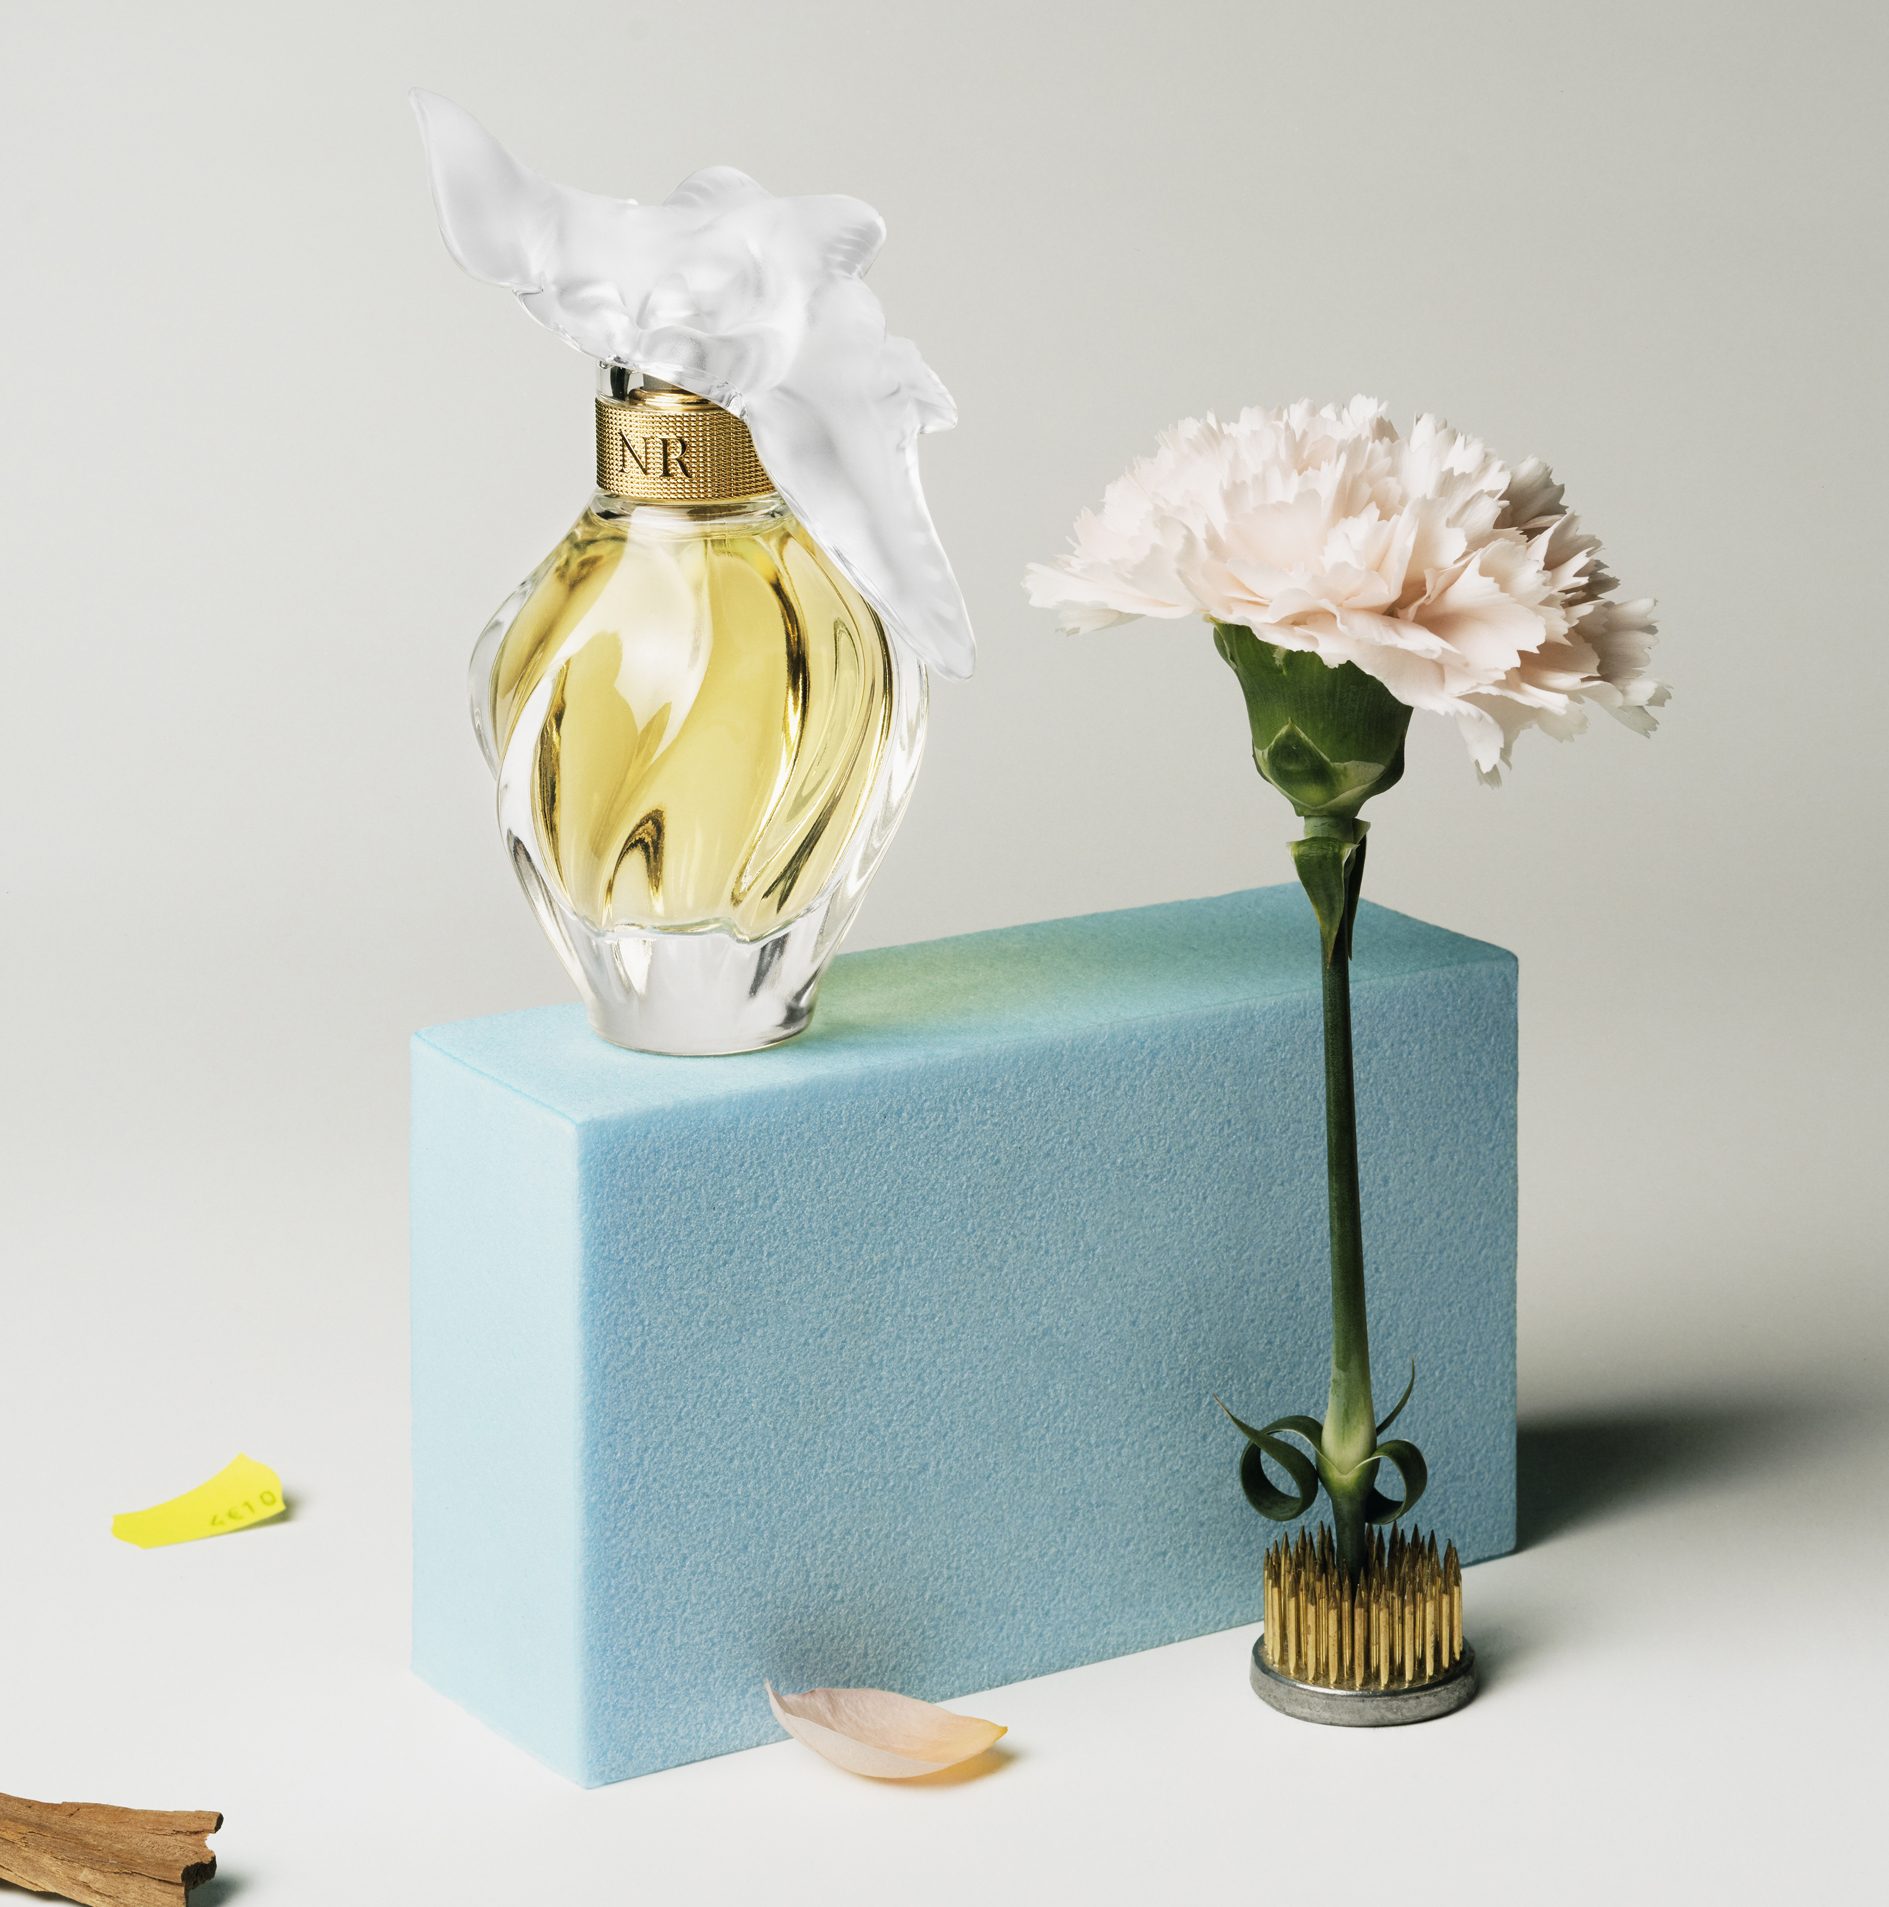 Le Calendrier de l'Avent Nina Ricci, - Nina Ricci Parfums